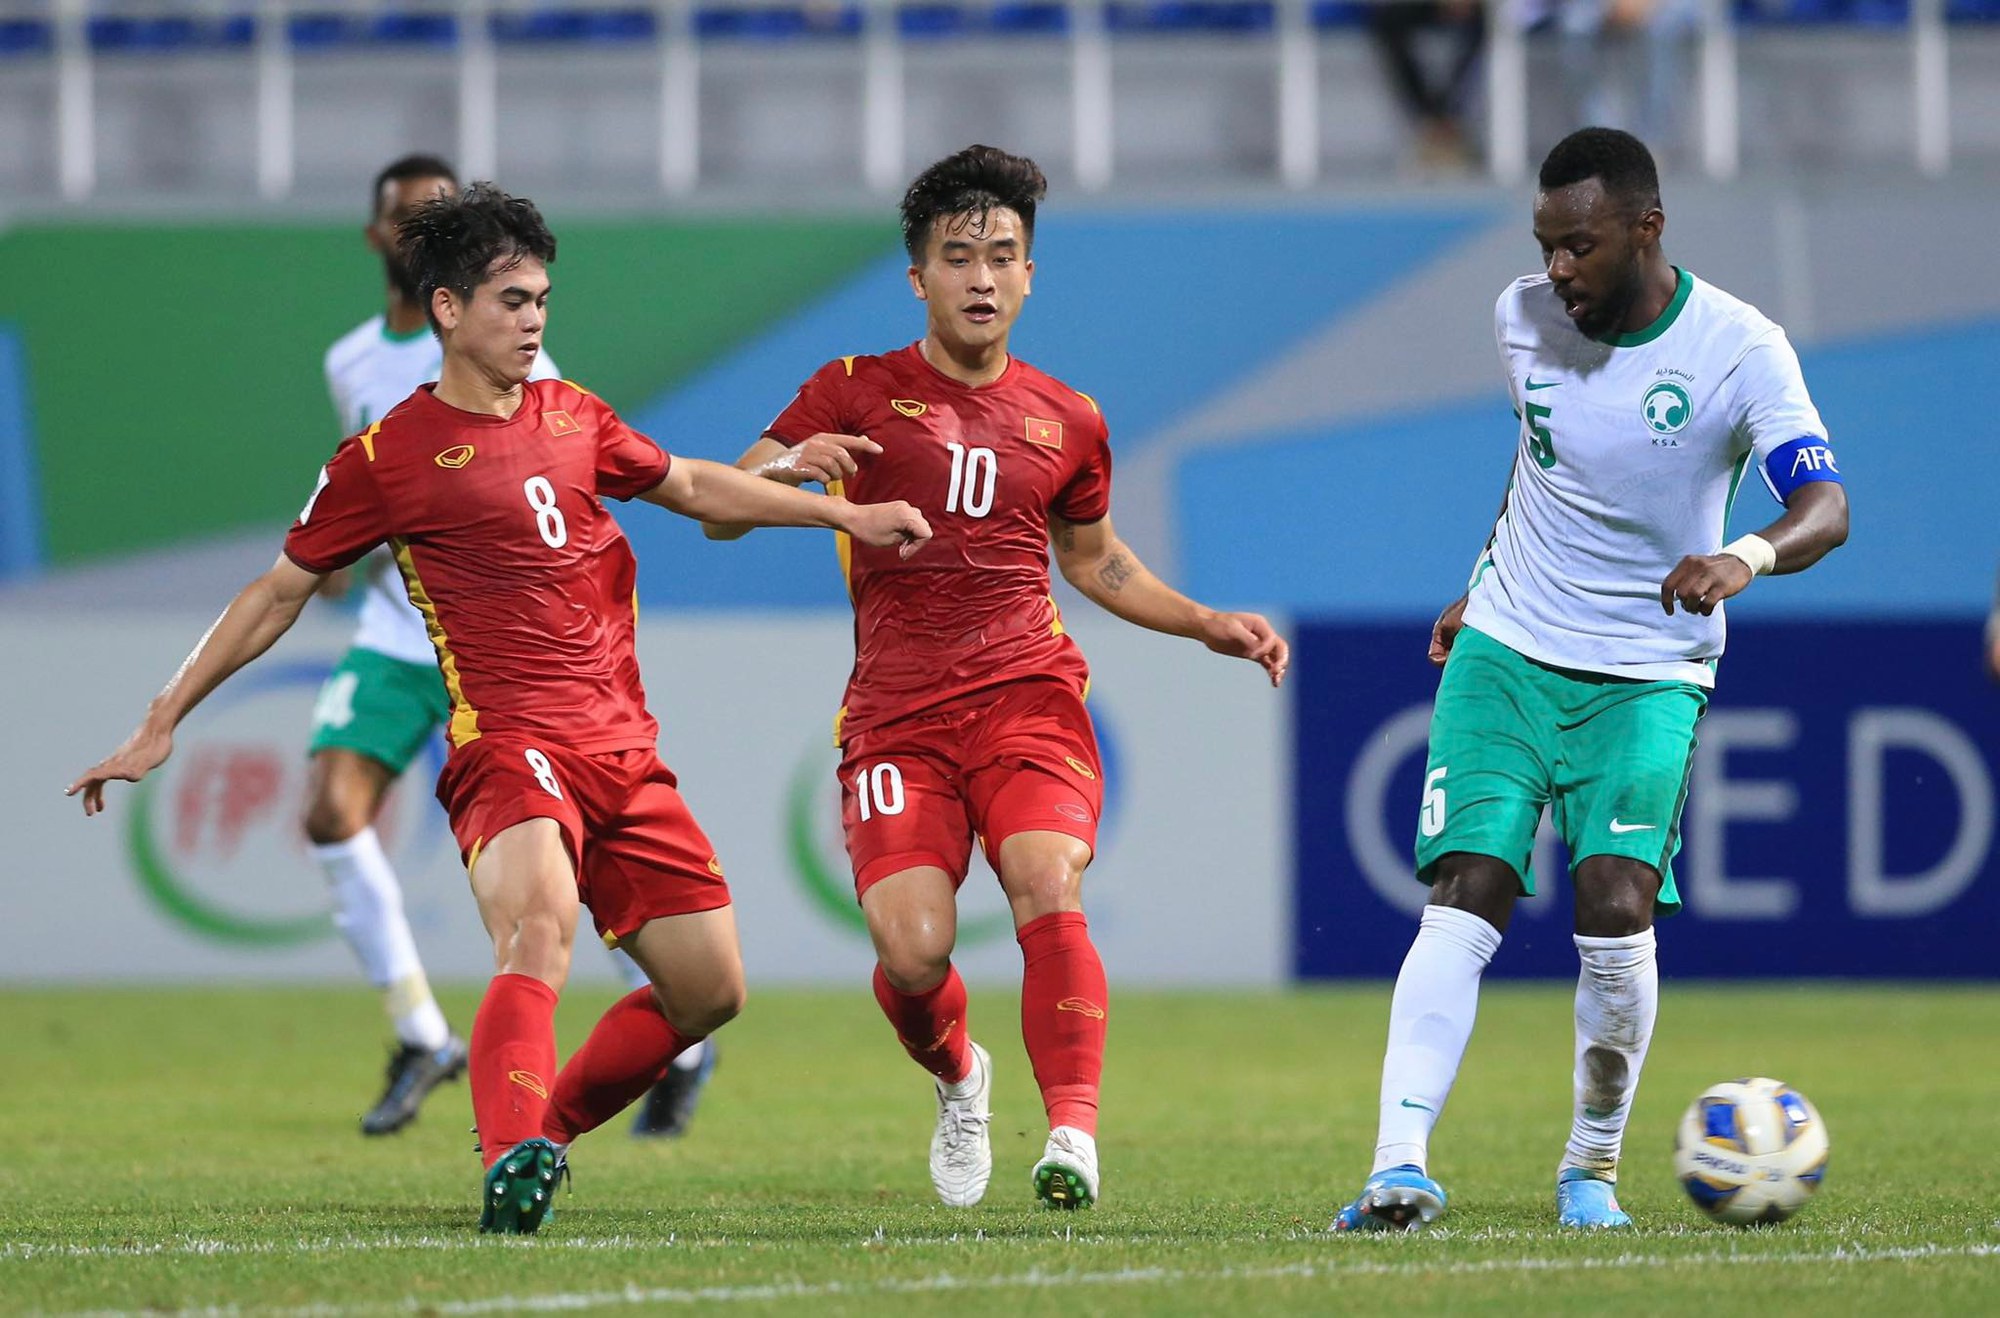 Lối chơi của U23 Việt Nam ở hiệp 2 với Ả Rập Saudi gây tranh cãi - Ảnh 4.